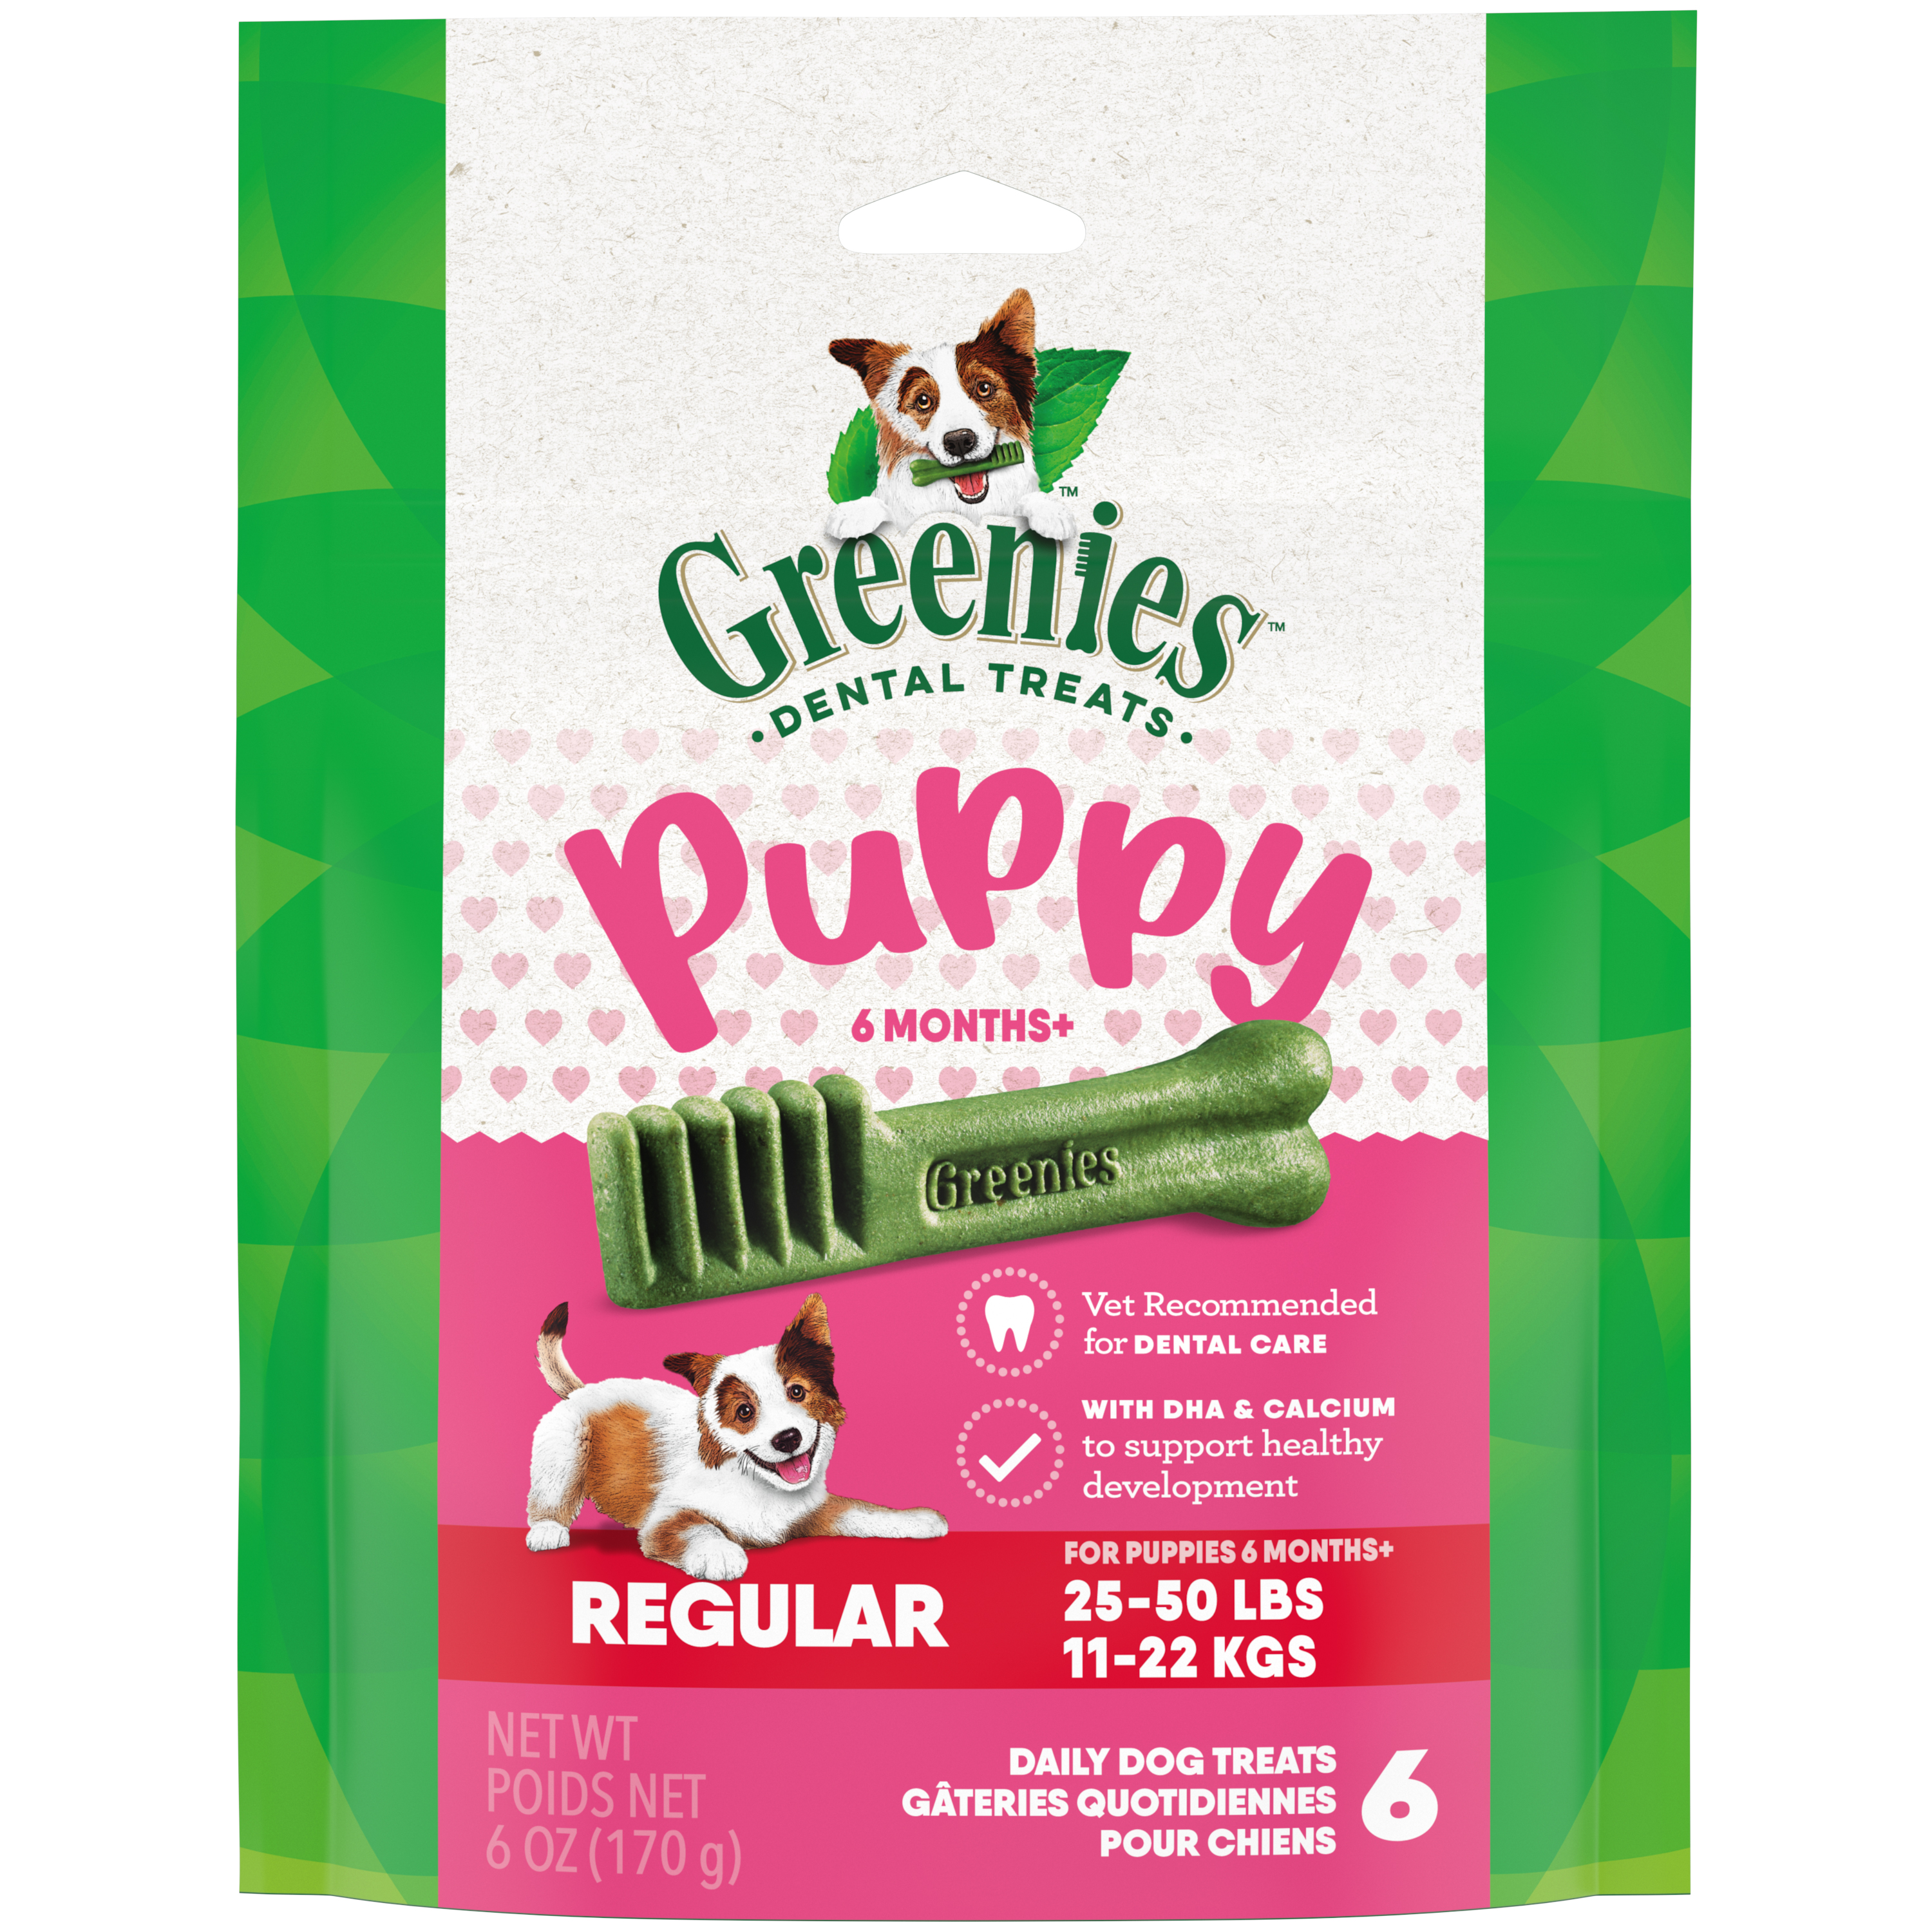 6oz Greenies PUPPY Regular Mini Treat Pack - Health/First Aid